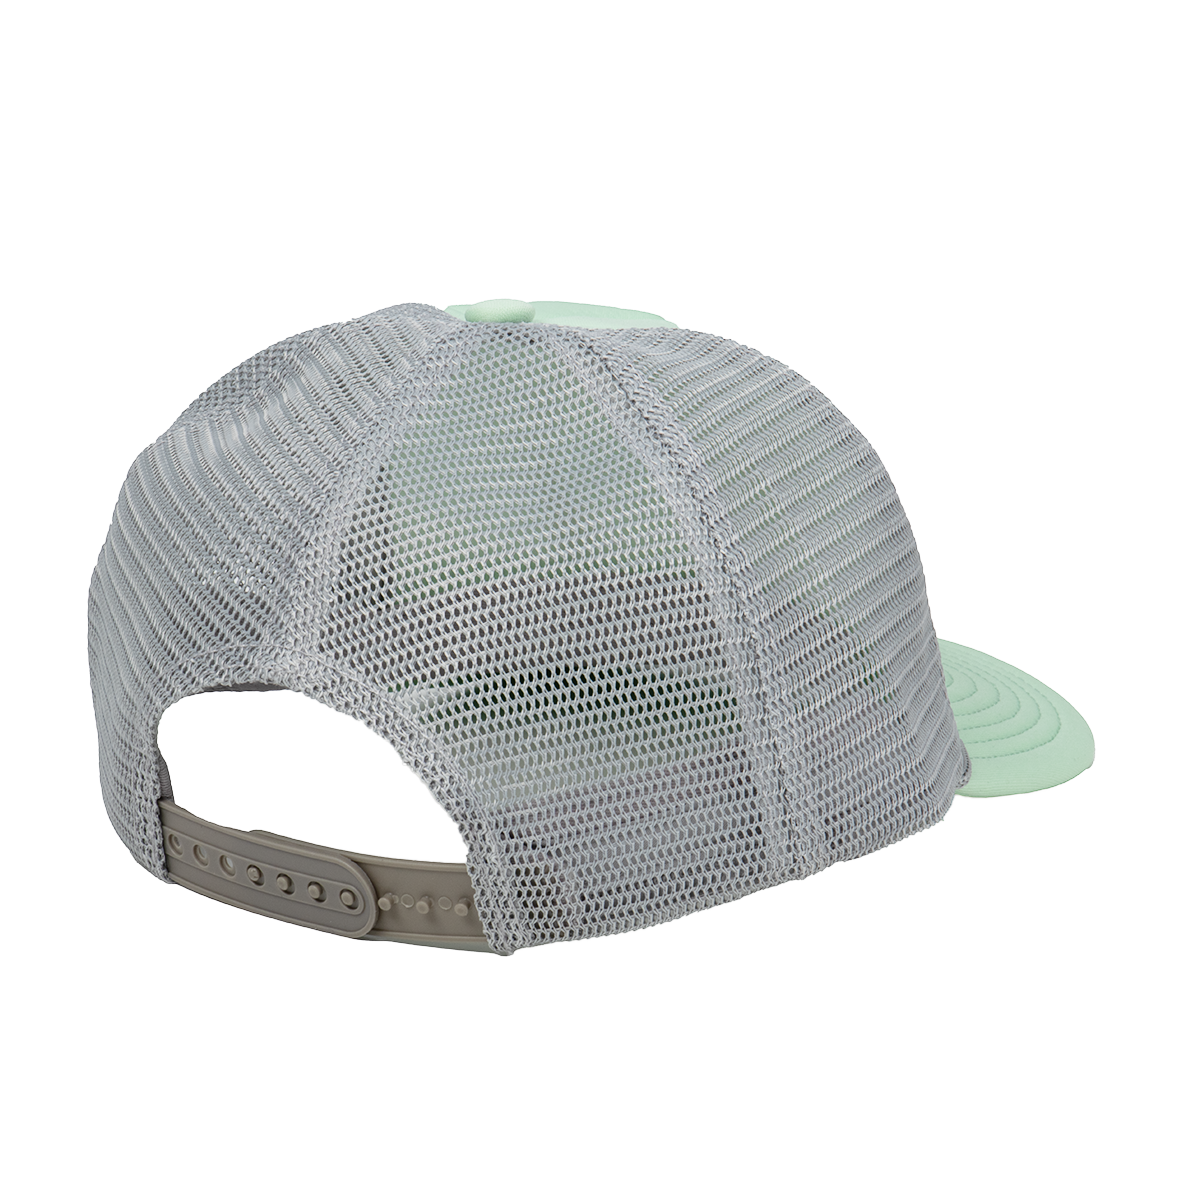 Dandelion Foam Trucker Hat - Mint/Light Gray Hat Touchstone   